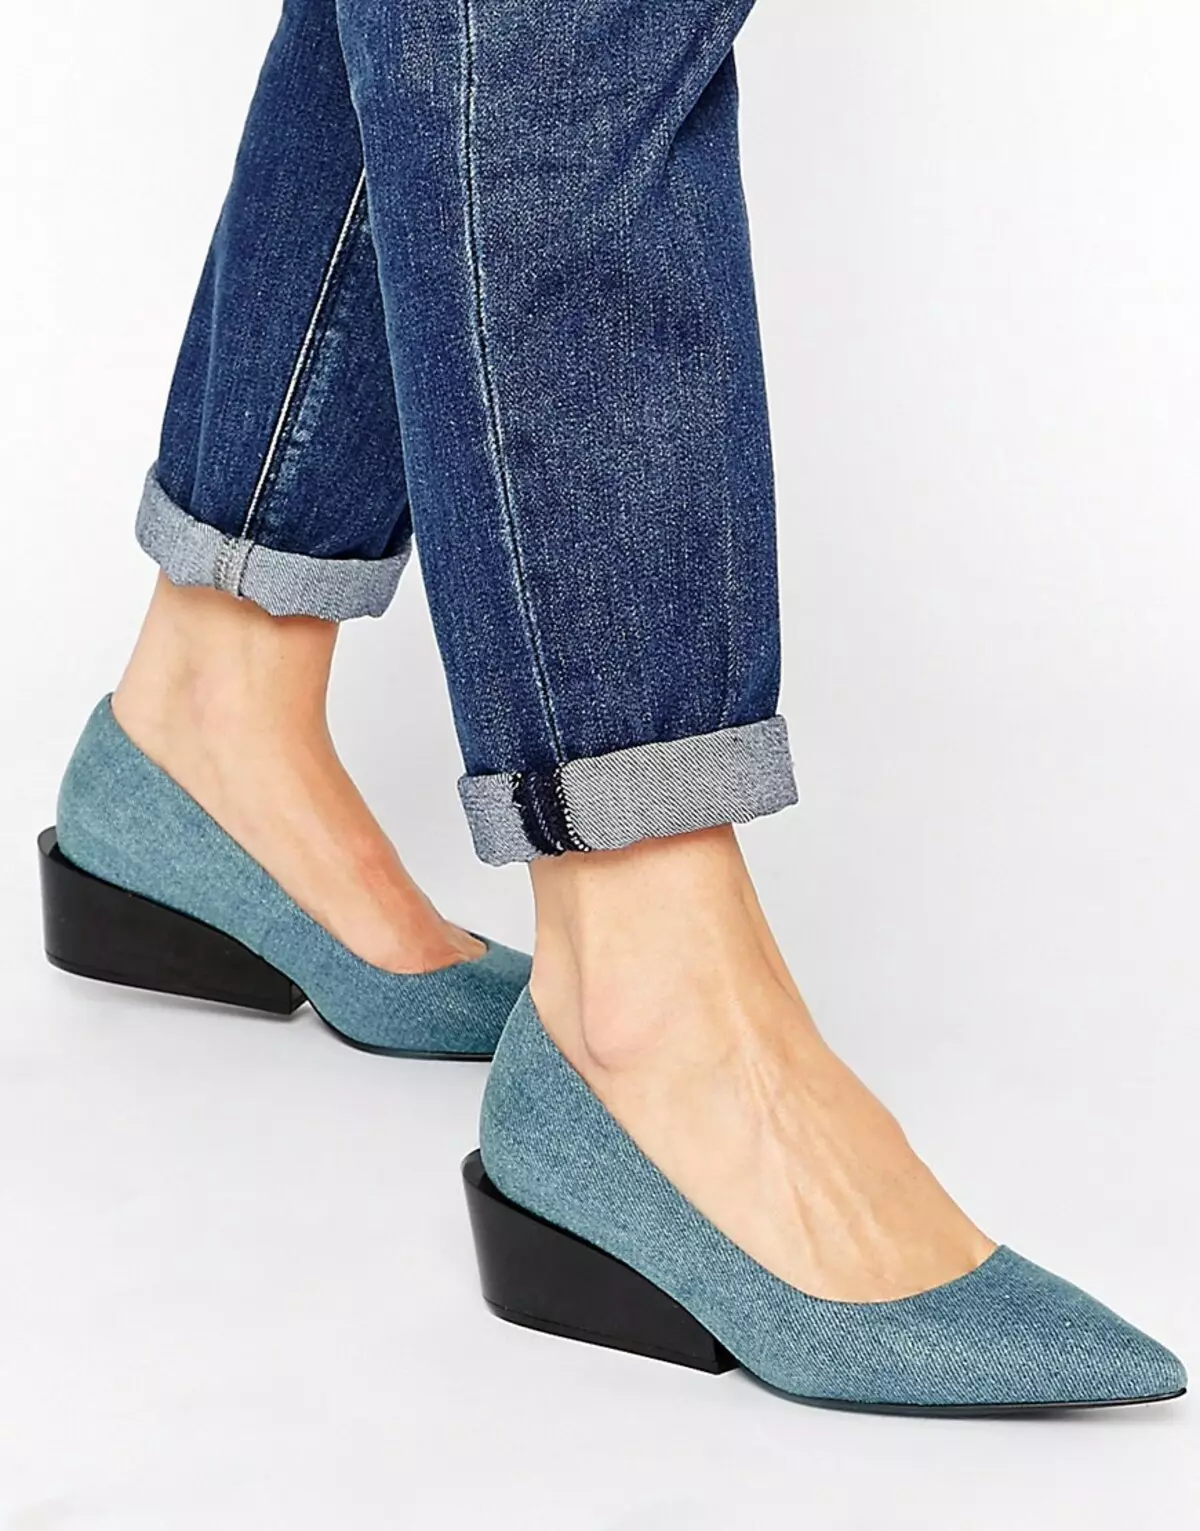 Вайлдберриз джинсы женские летние. Туфли cheap Monday. Модная джинсовая обувь 2022 Womens. Джинсовые туфли. Джинсовые туфли женские.